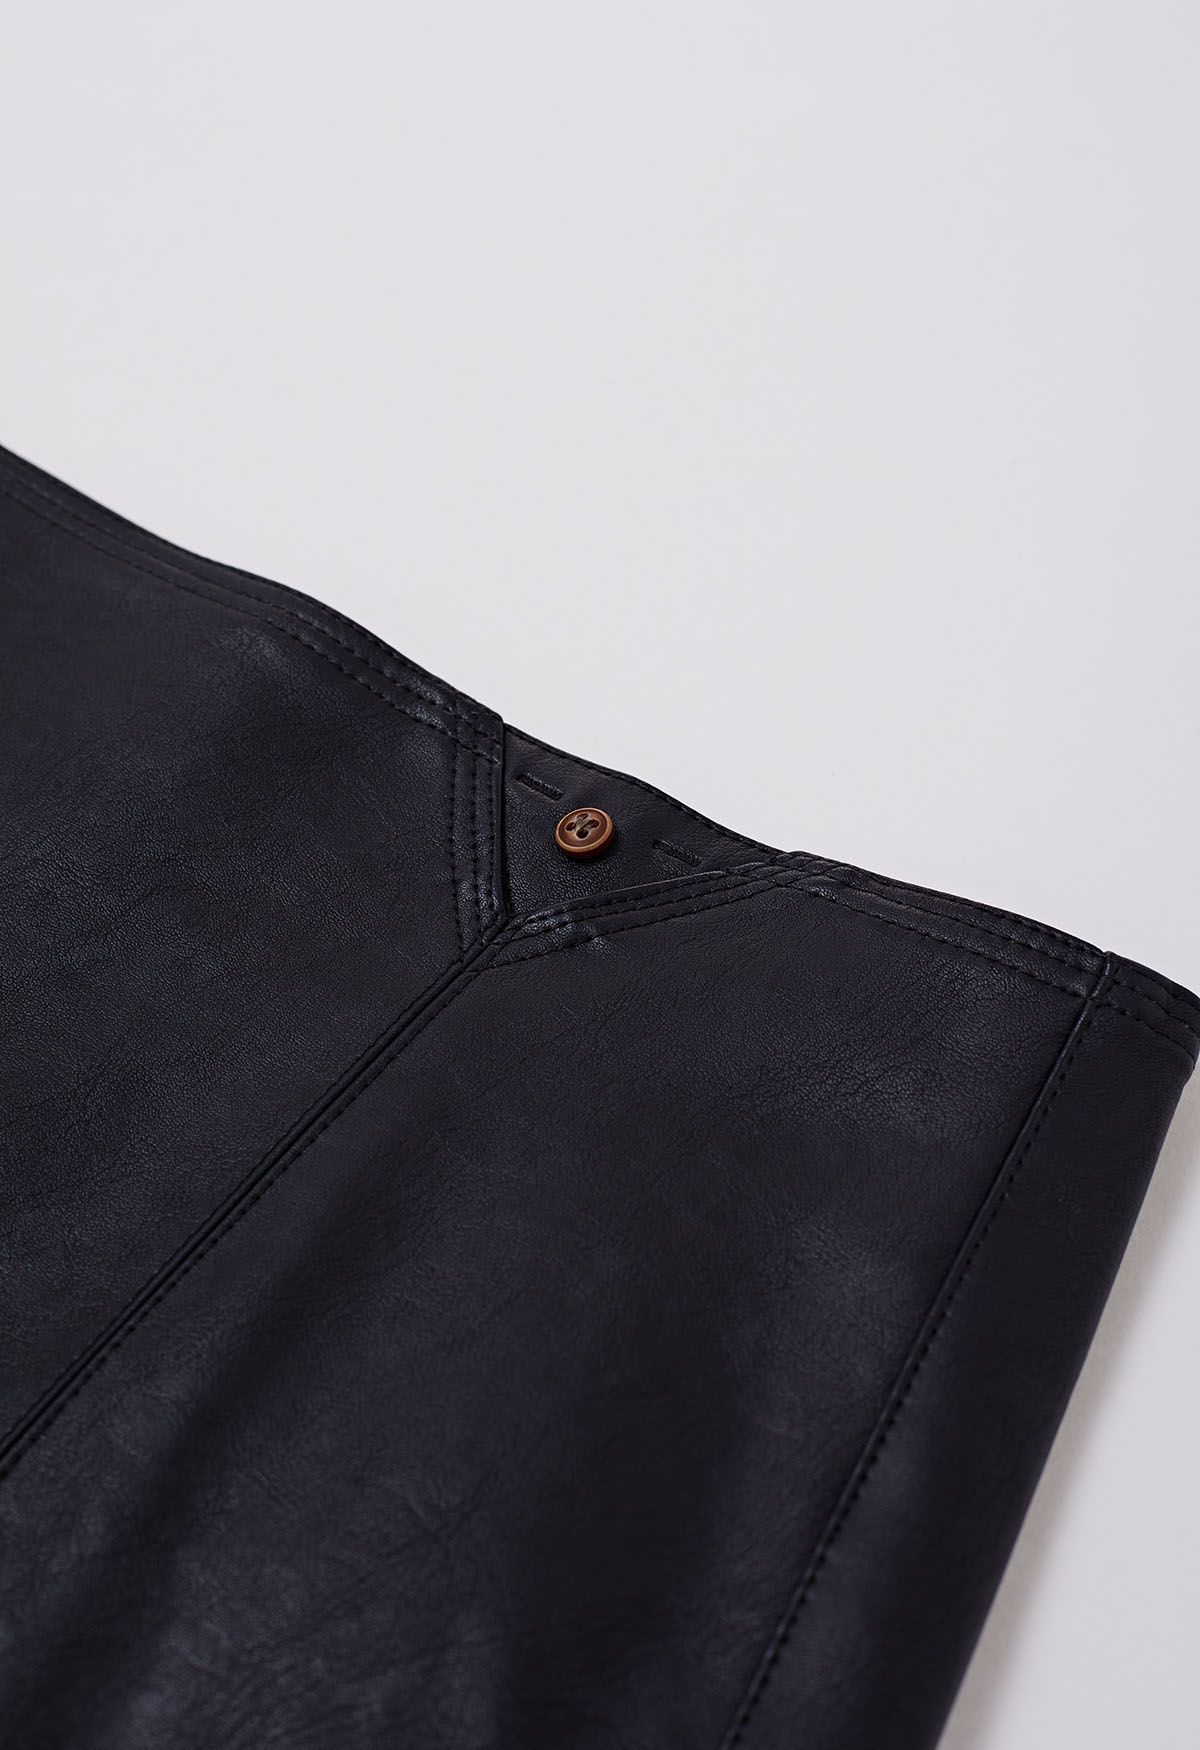 Minifalda de piel sintética con botones en negro